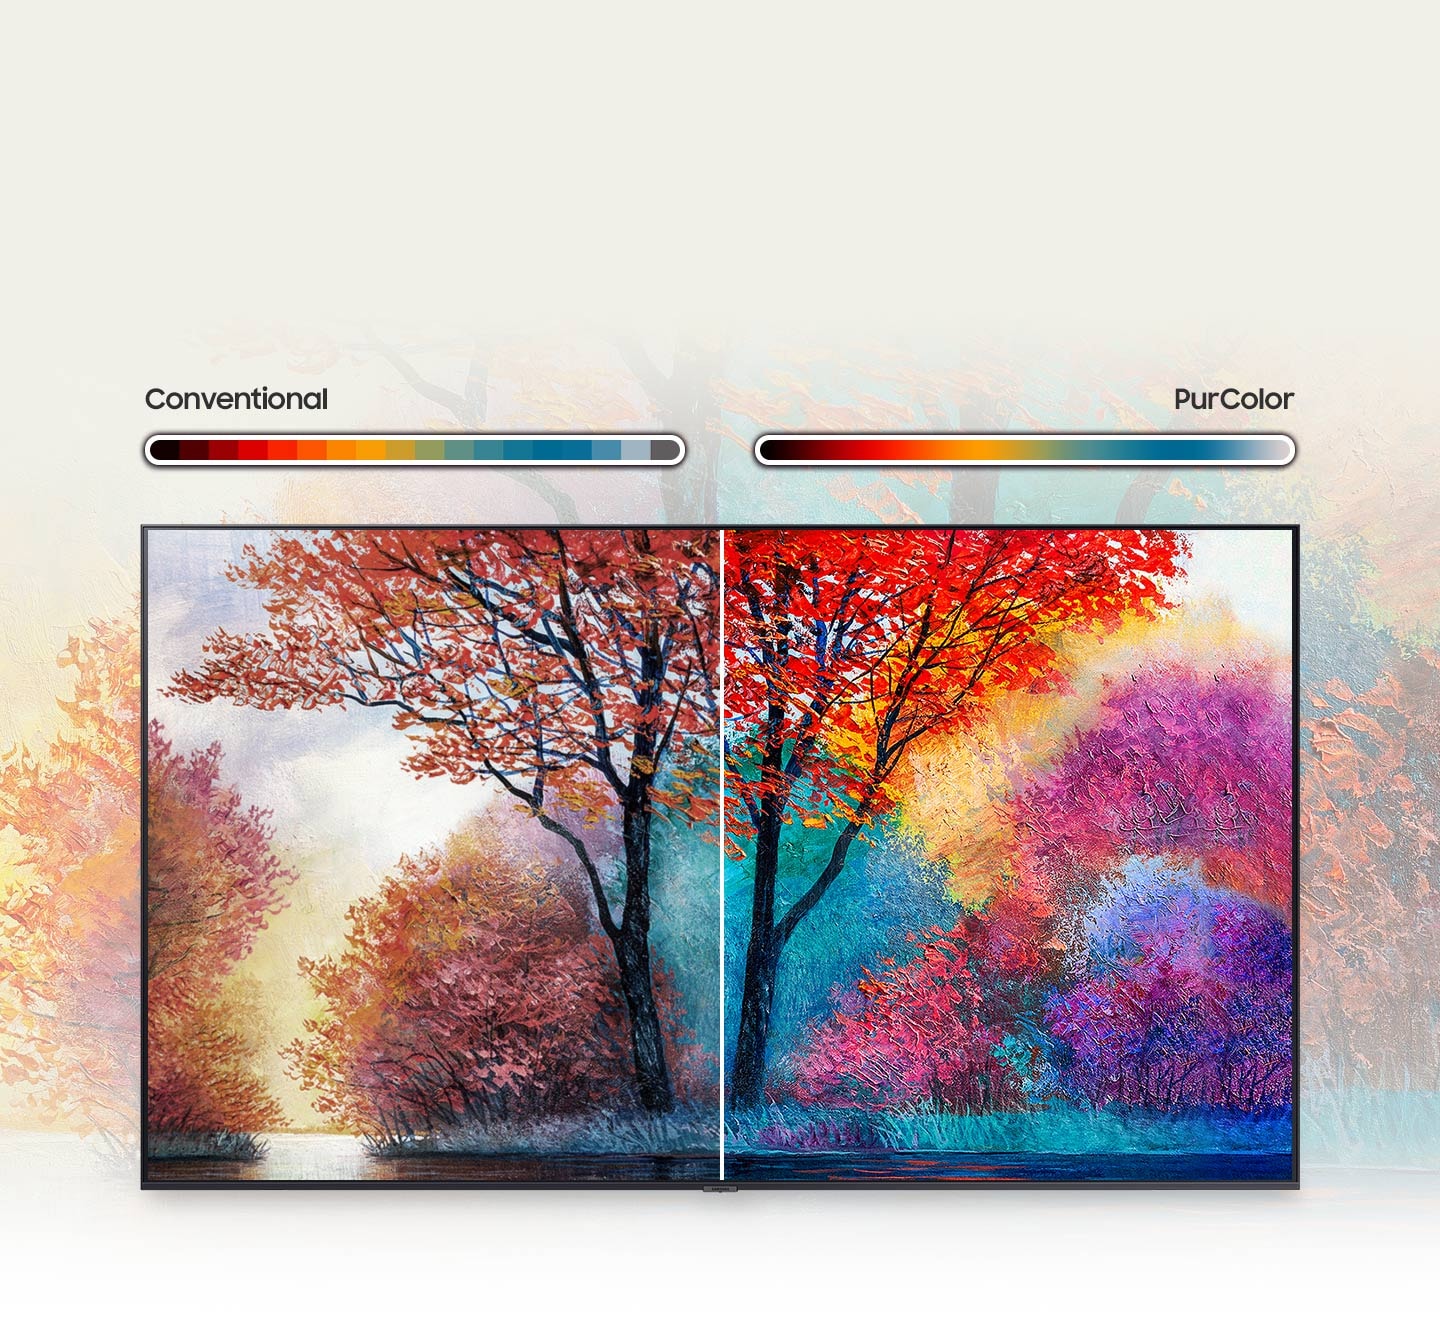 La peinture de droite, comparée à la peinture conventionnelle de gauche, montre une plus large gamme de production de couleurs grâce à la technologie PurColor.